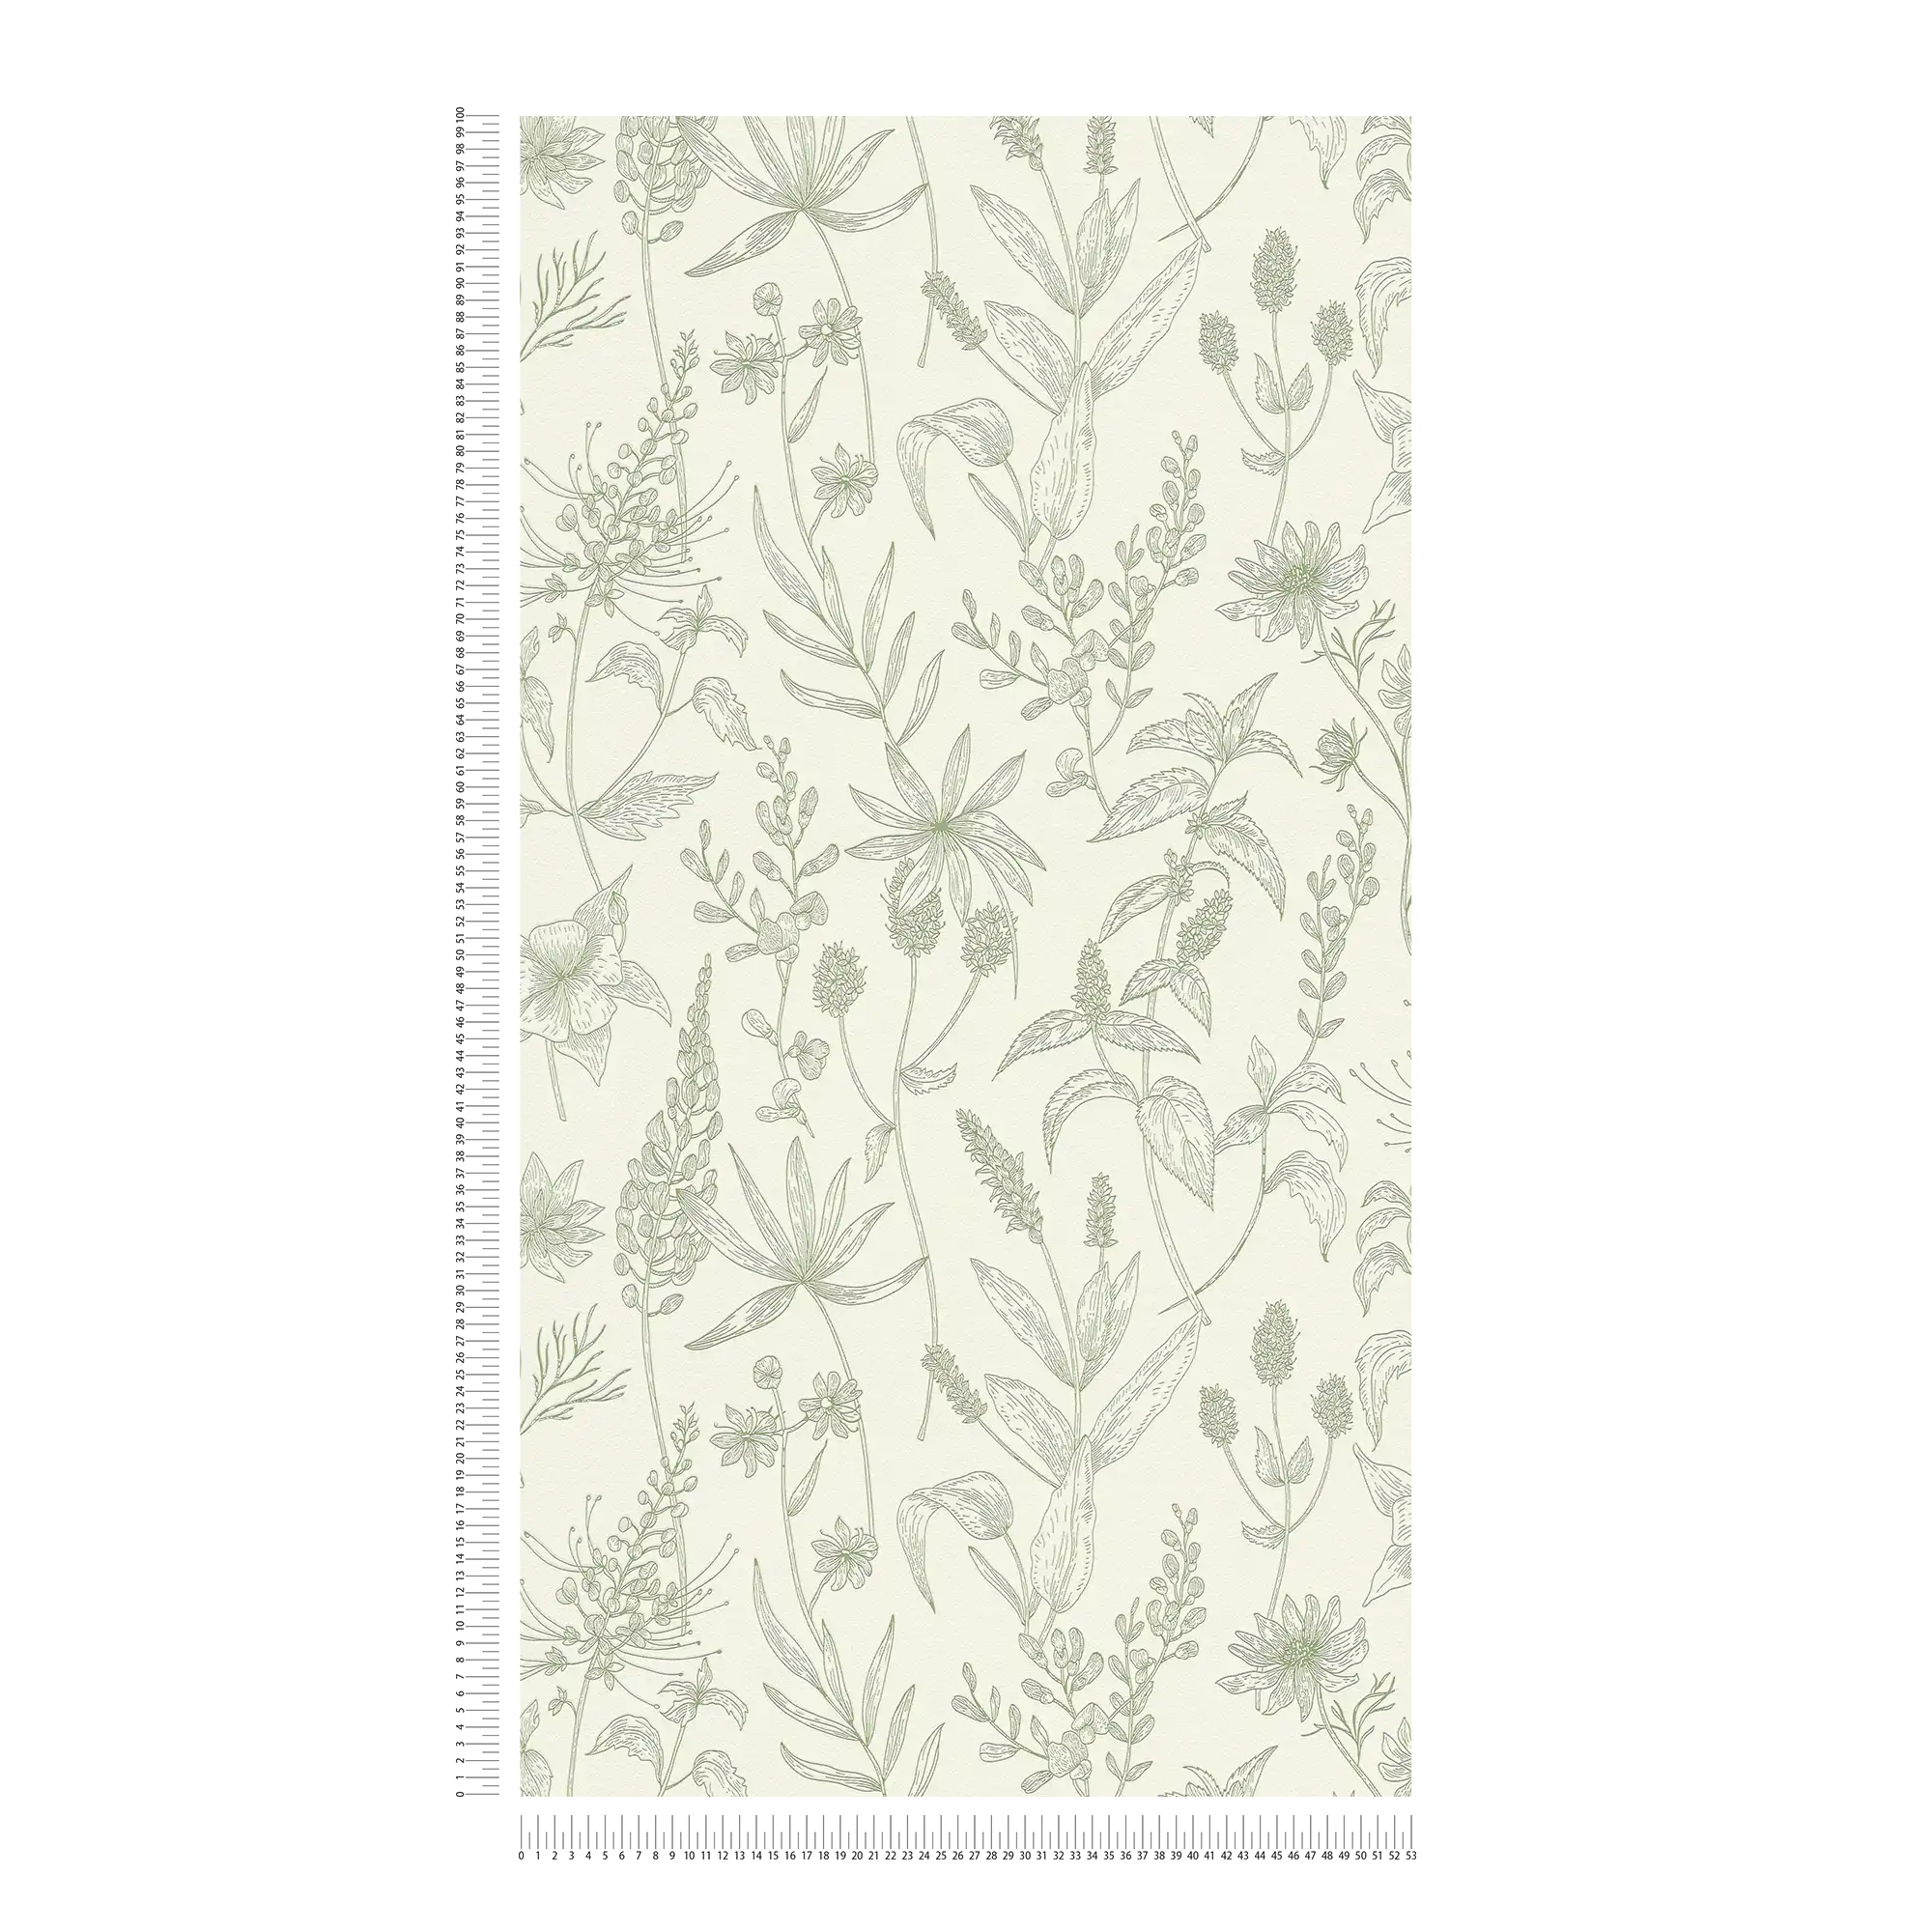             Papel pintado no tejido con motivos florales y acentos metálicos - verde, plata, blanco
        